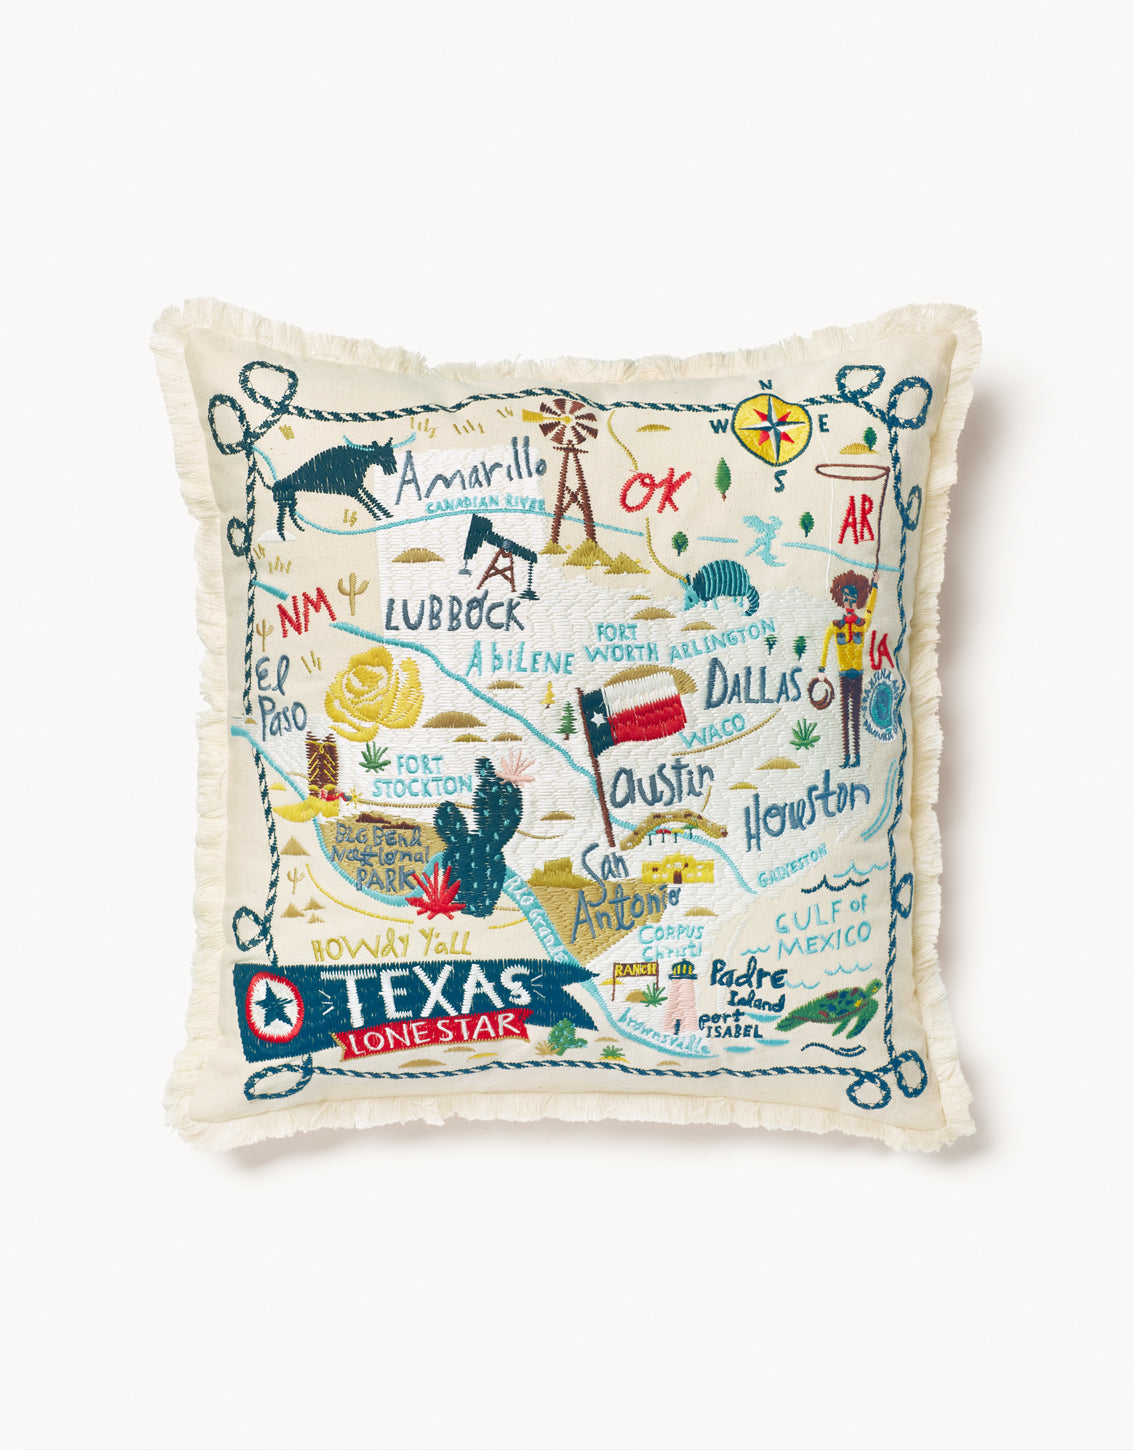 Texas Pillow